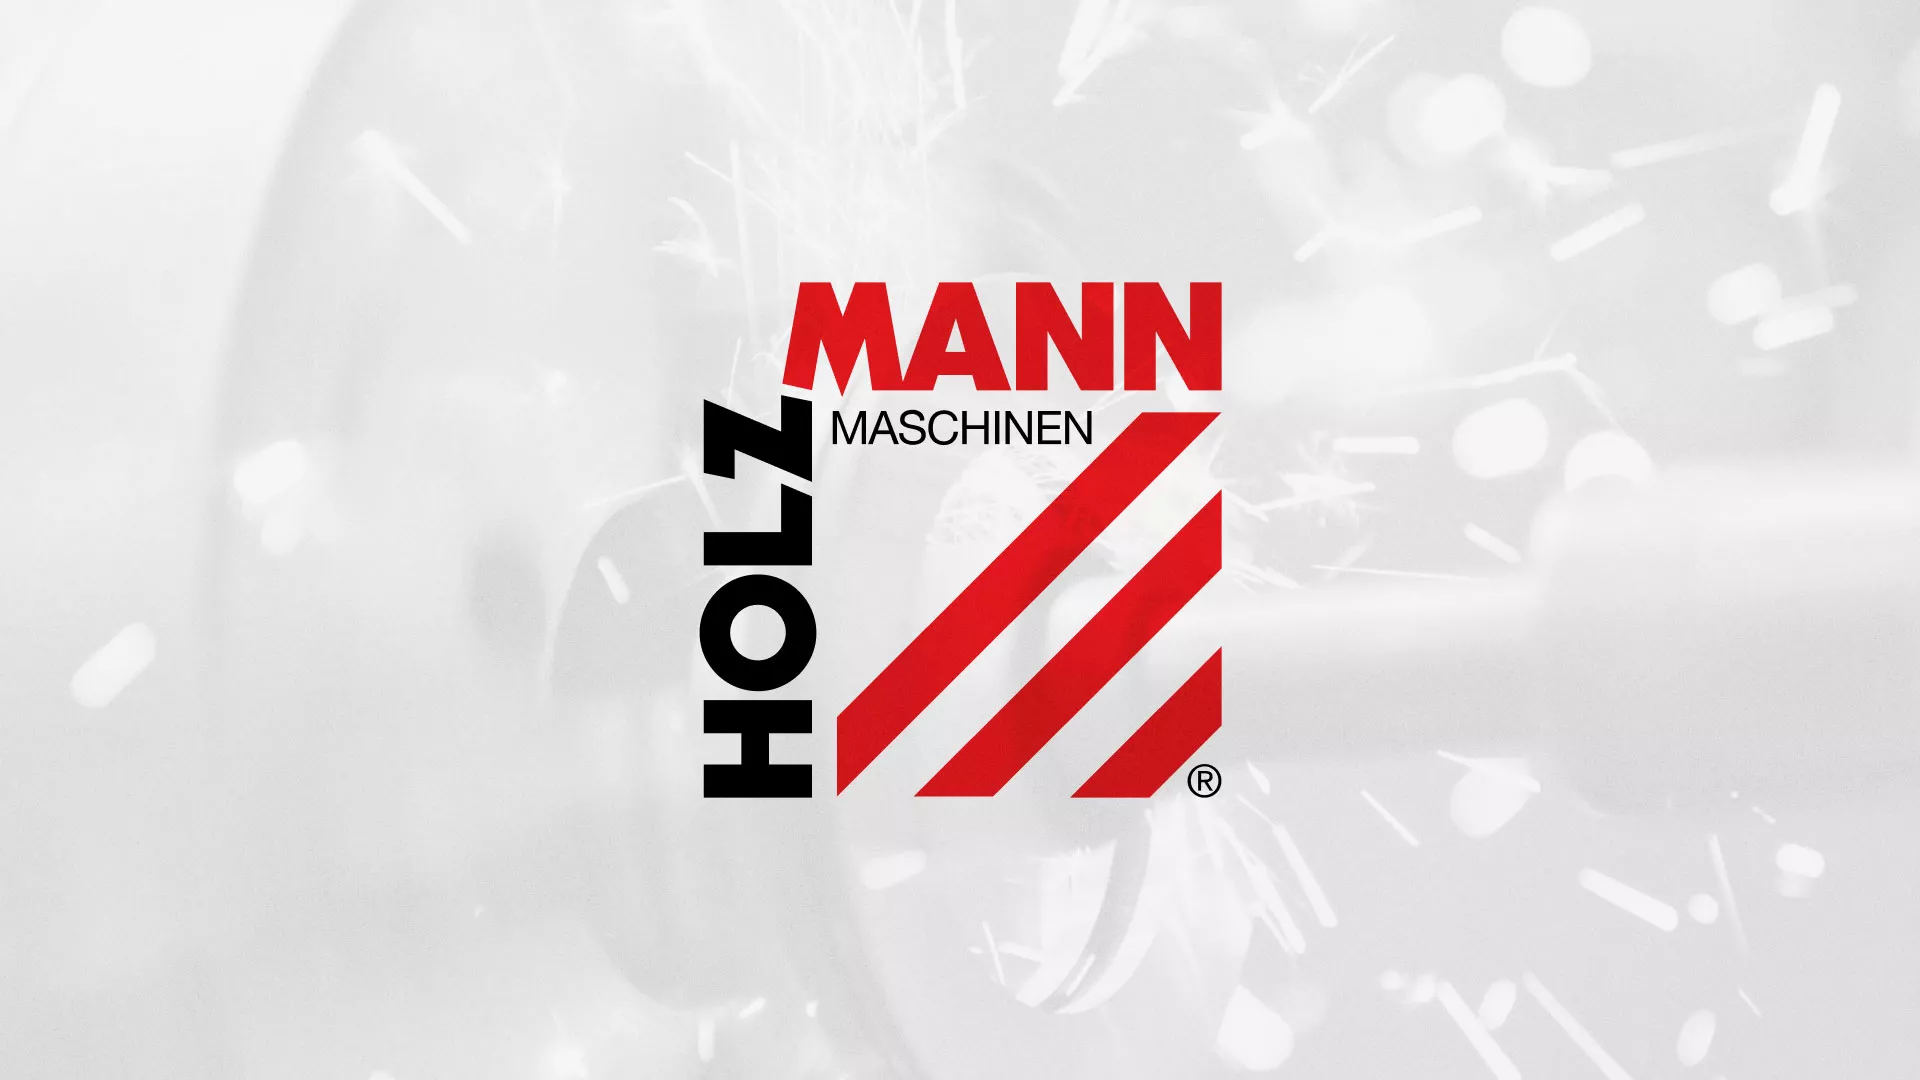 Создание сайта компании «HOLZMANN Maschinen GmbH» в Славске